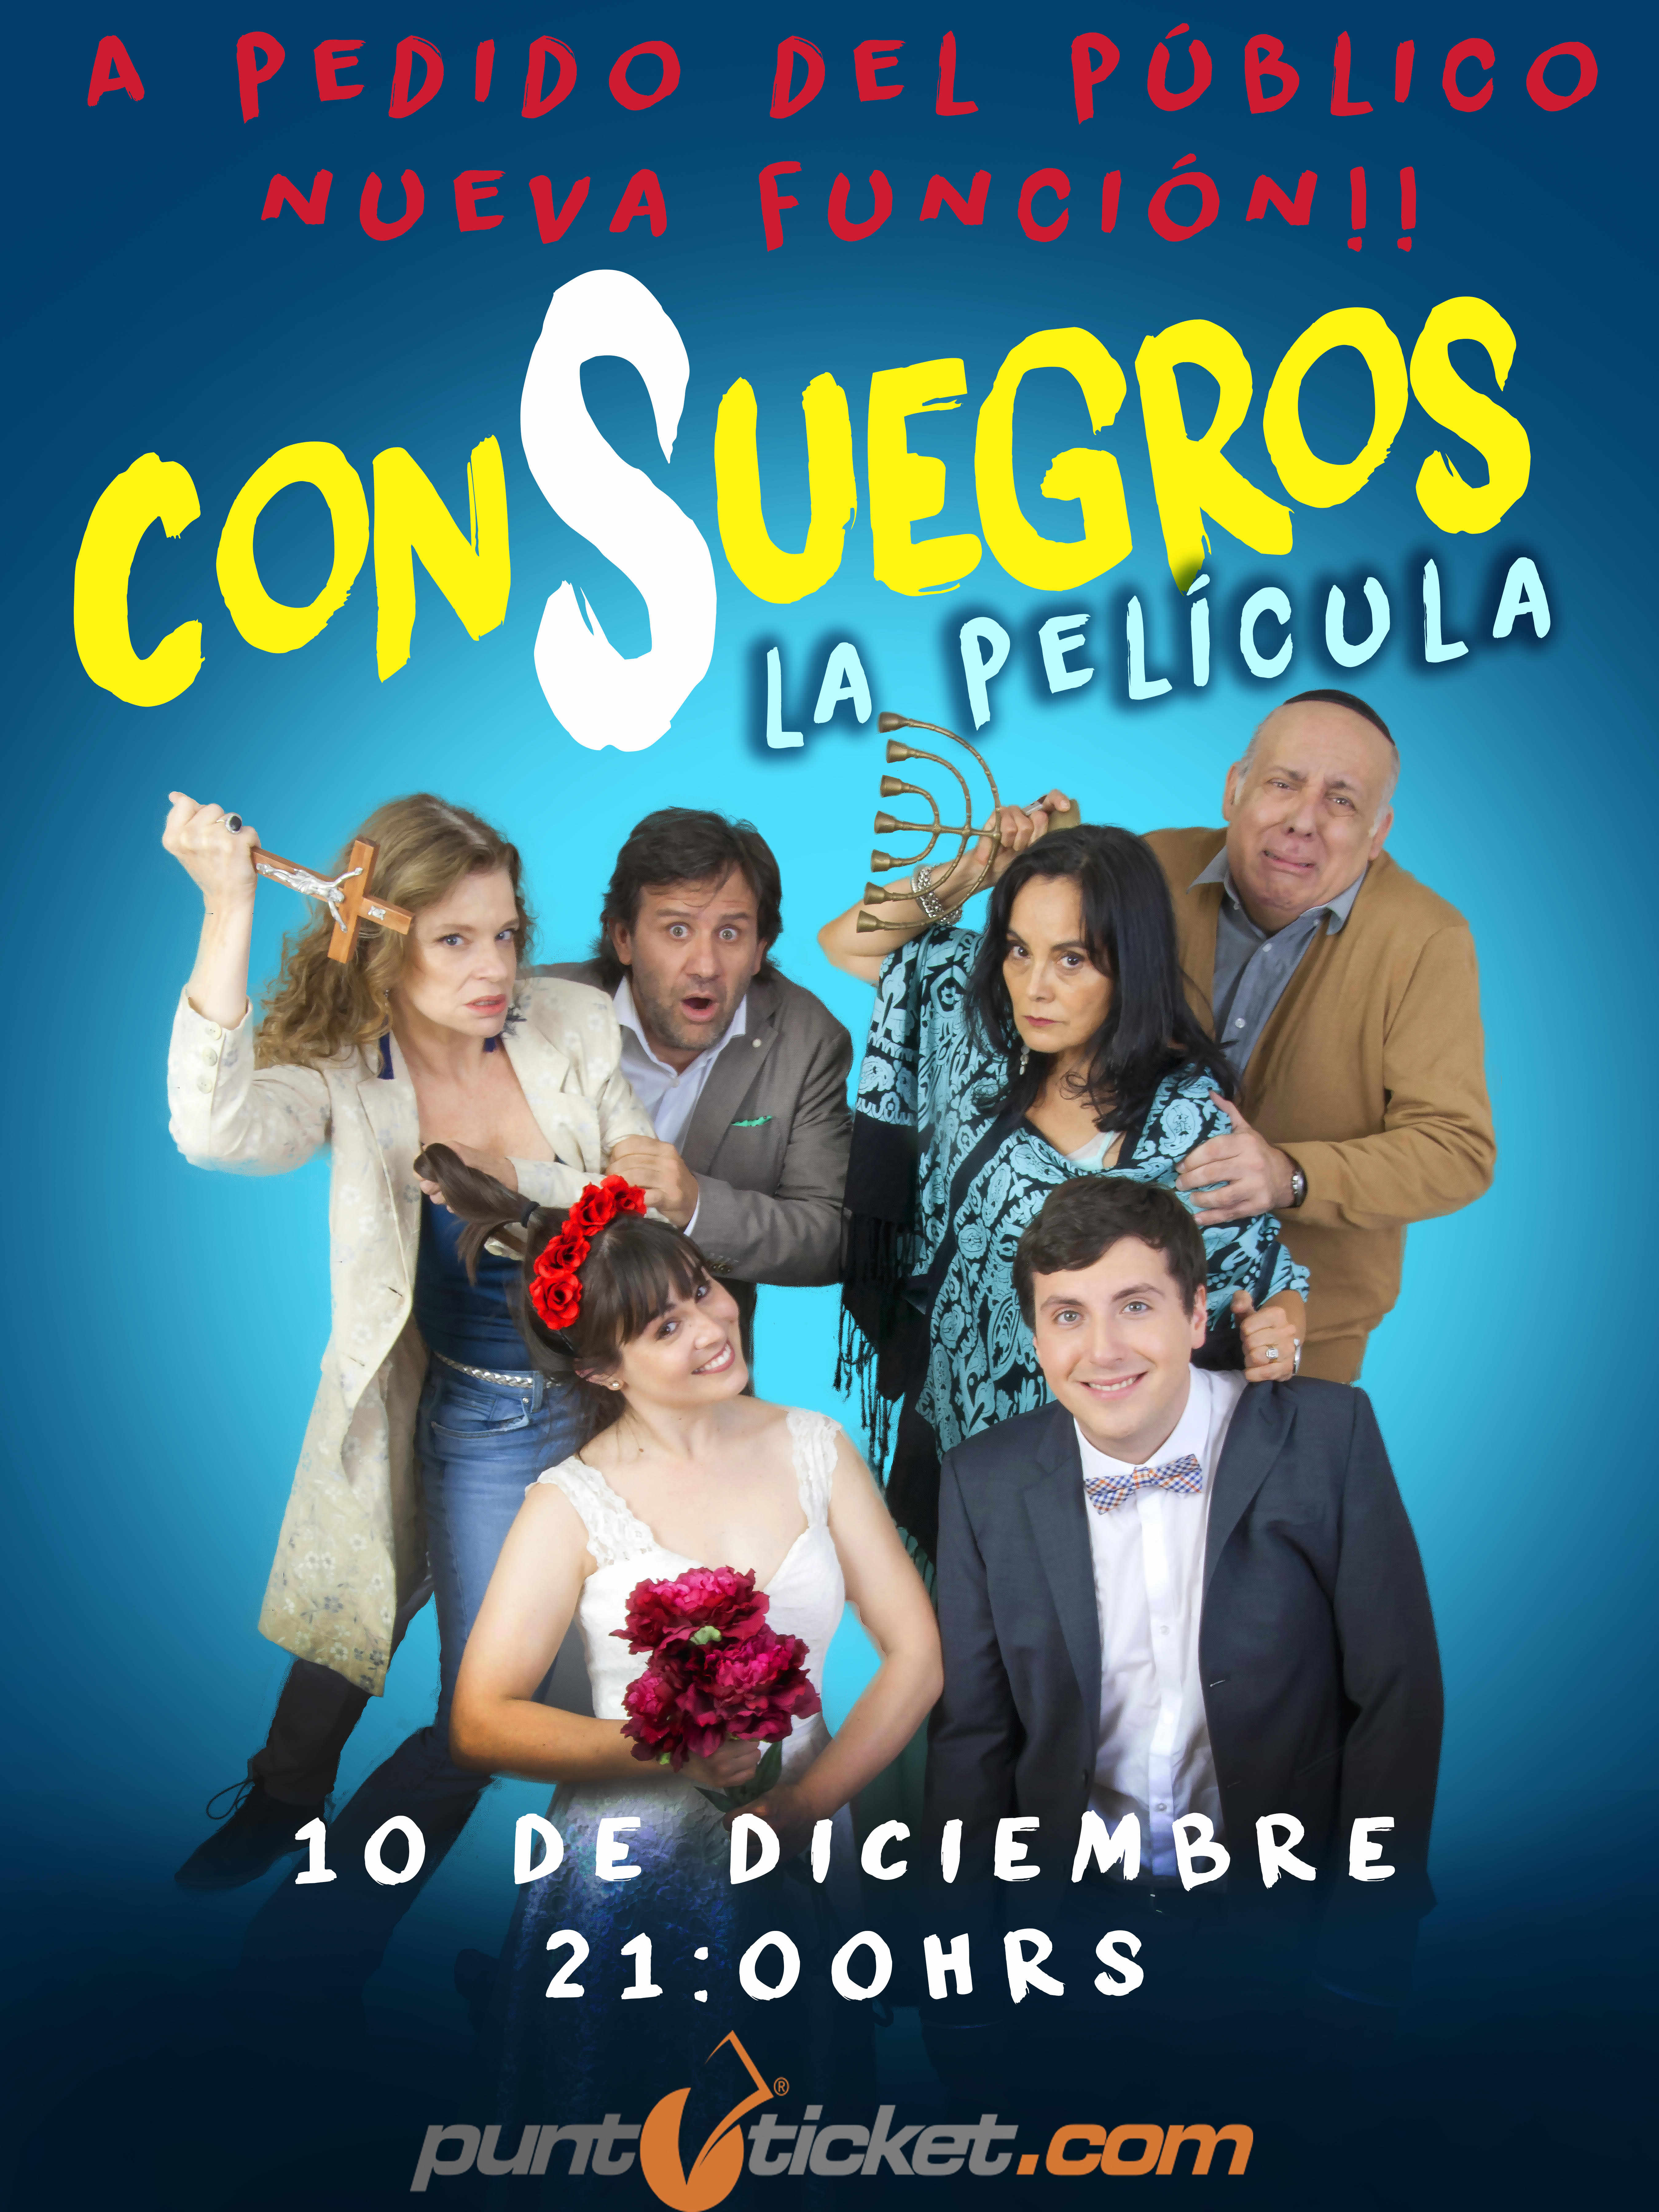 Consuegros (2020)